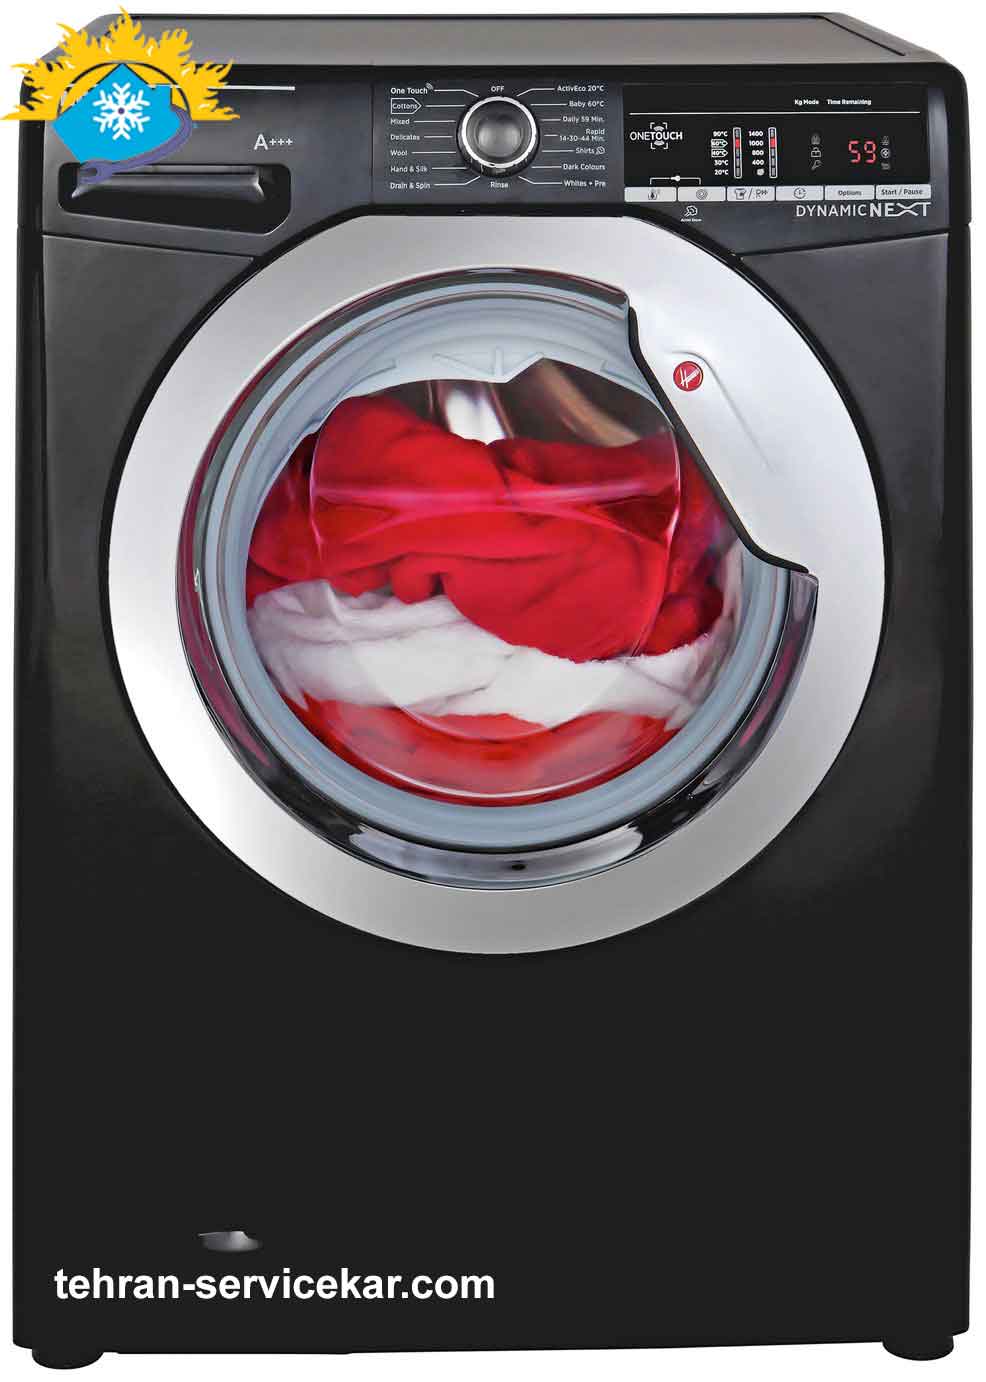 نحوه تمیز کردن فیلتر پمپ تخلیه ماشین لباسشویی